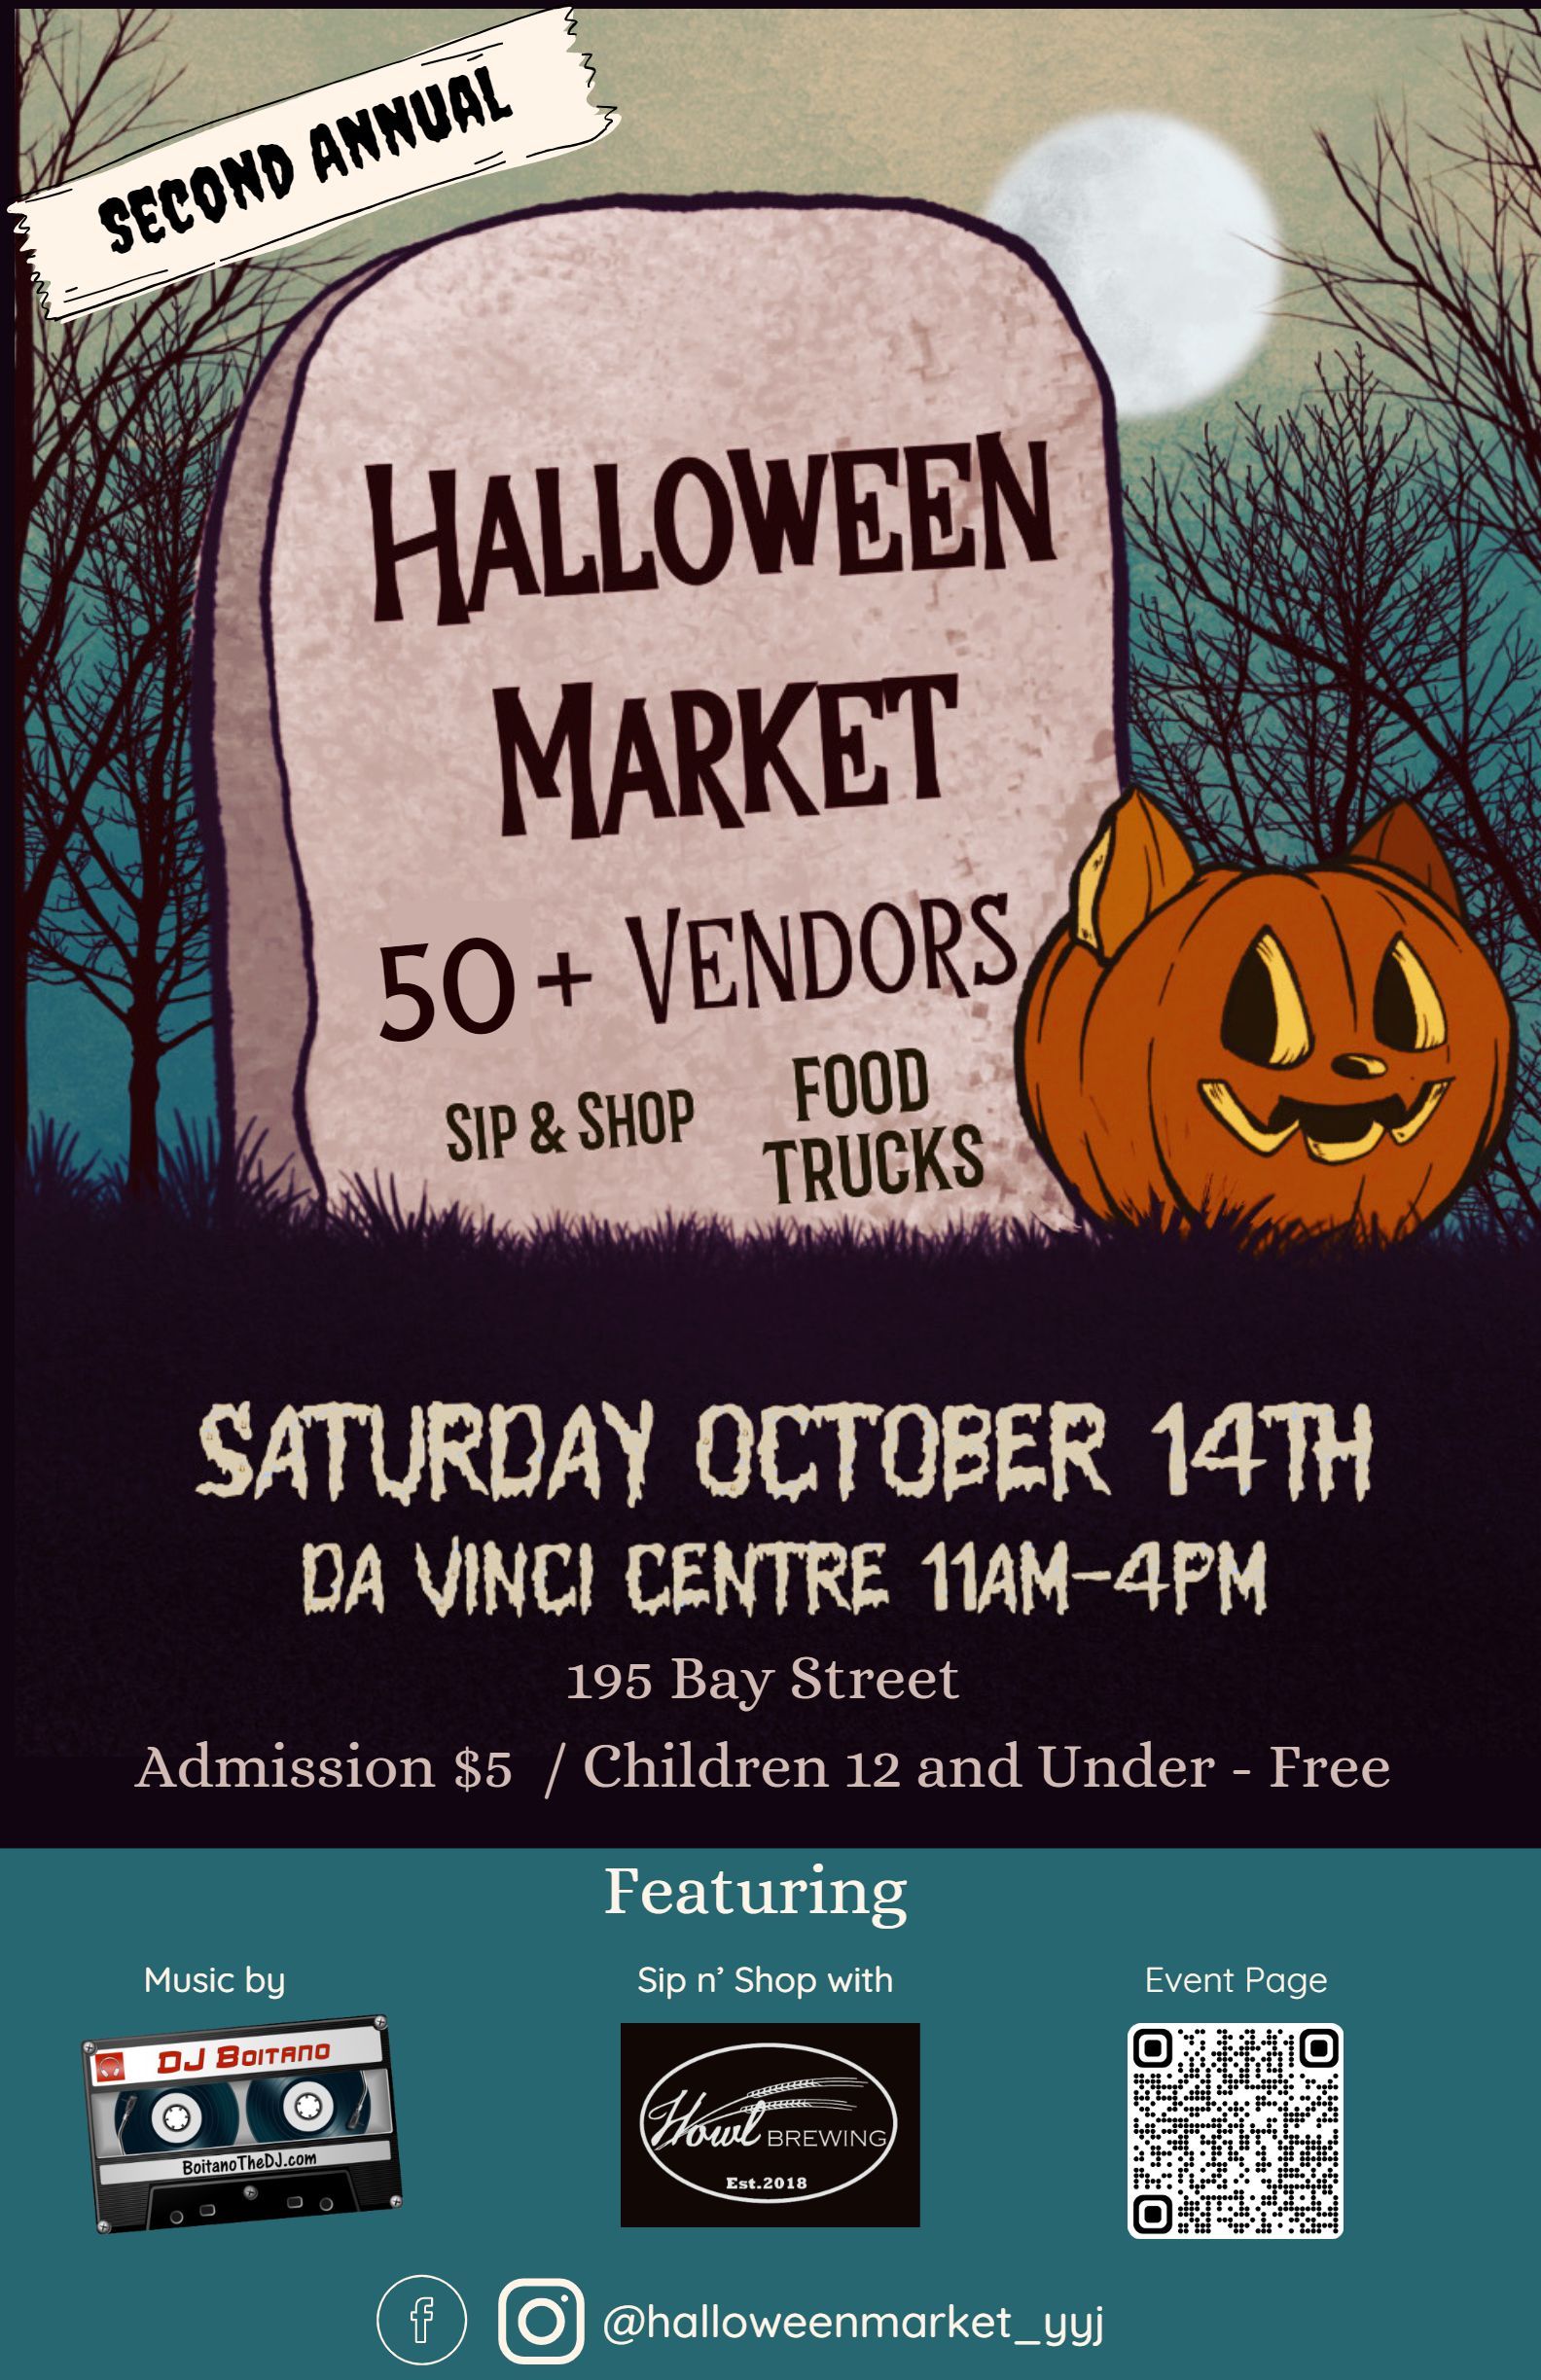 Copy of Halloween Market Poster (11 × 17 in)